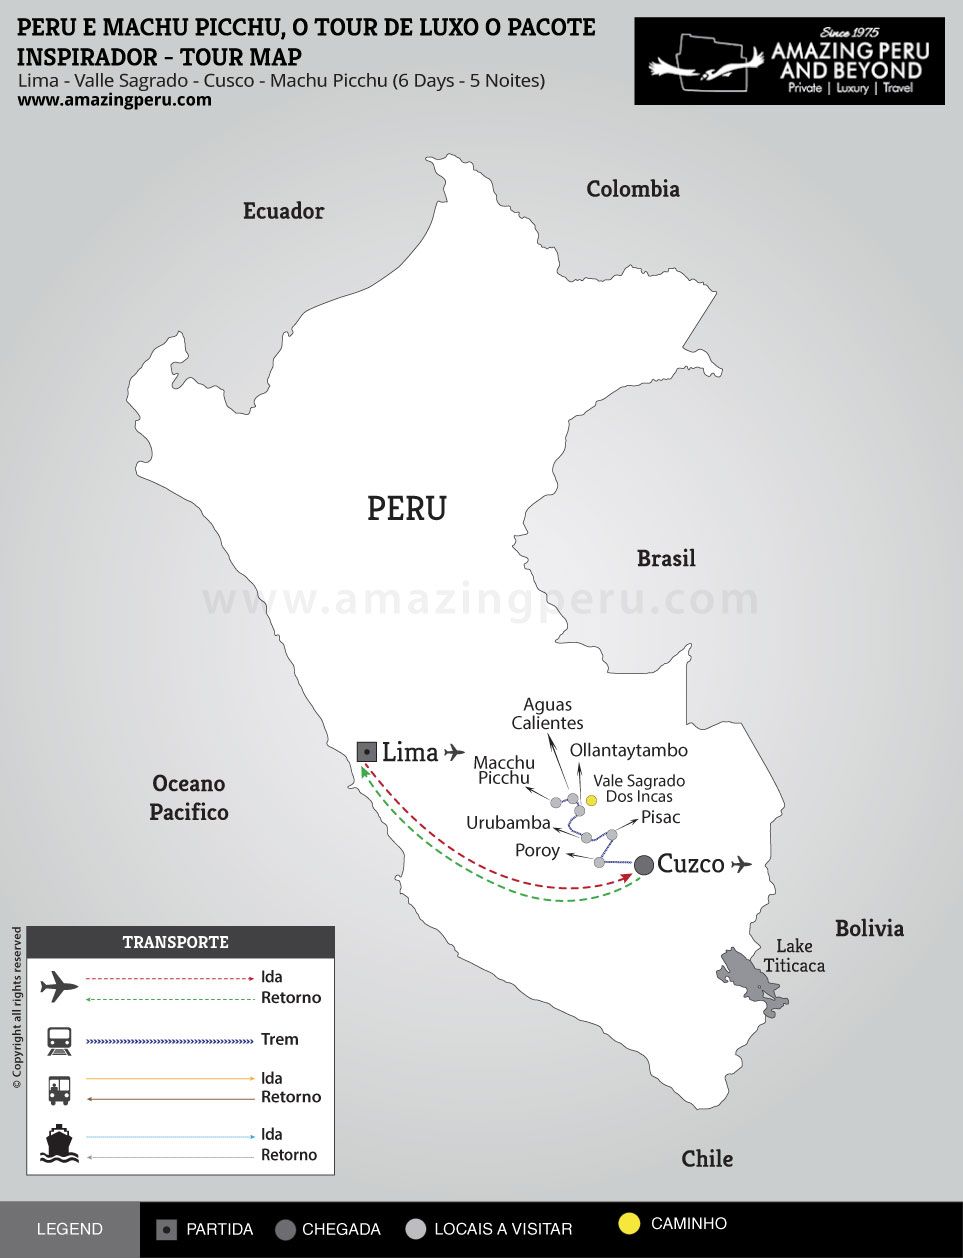 Peru e Machu Picchu, o tour de Luxo  o Pacote Inspirador - 6 days / 5 nights.